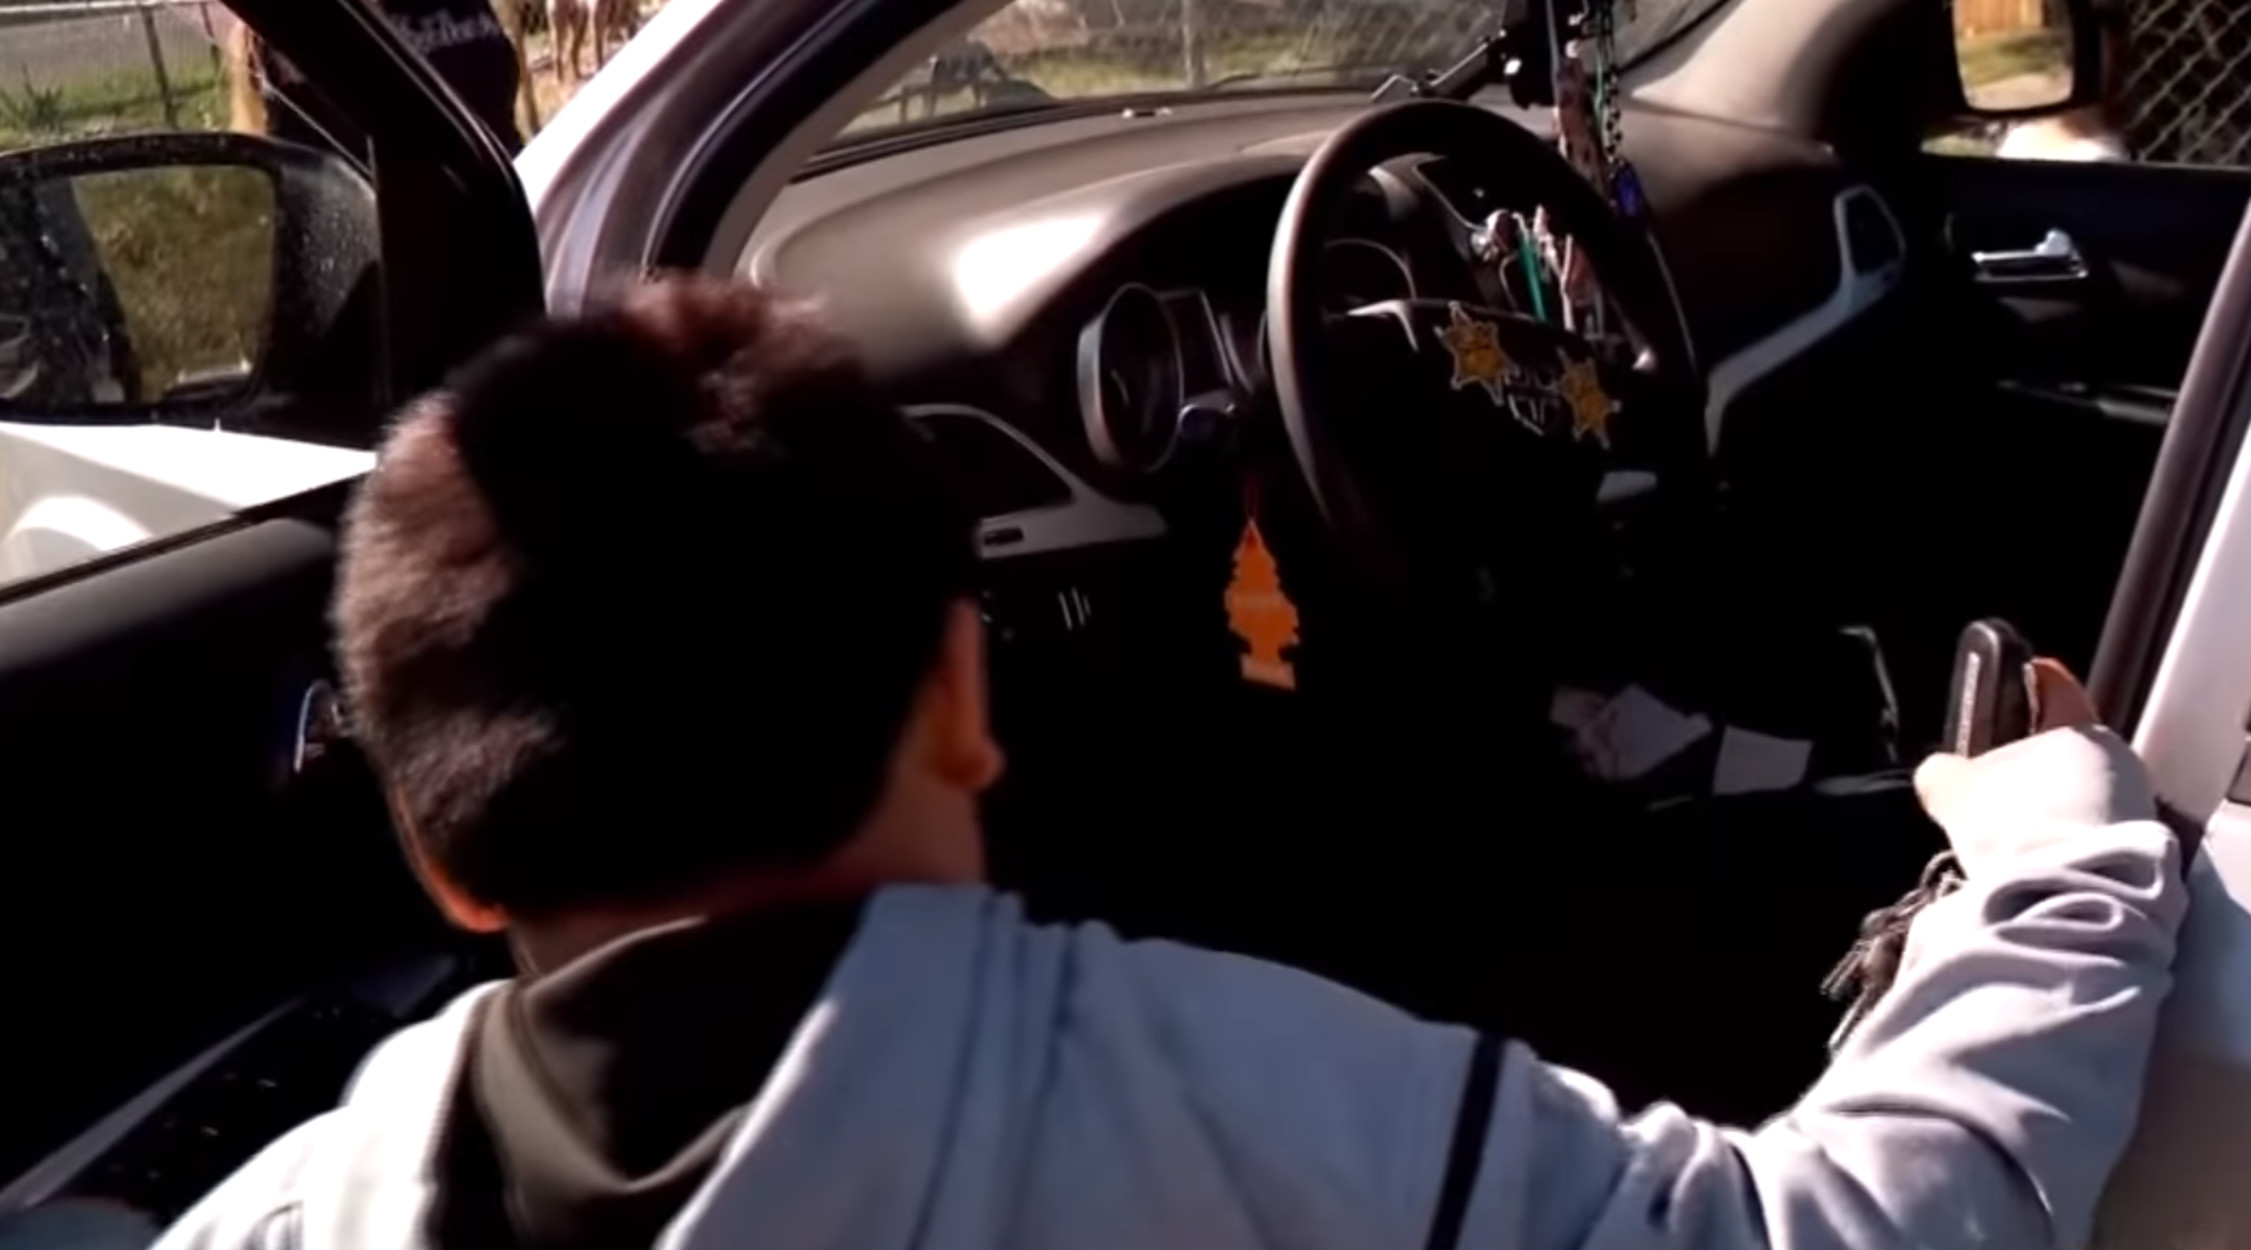 Αστυνομικοί σταμάτησαν αυτοκίνητο που οδηγούσε ένας 5χρονος! “Πάω να πάρω μια Λαμποργκίνι” (video)